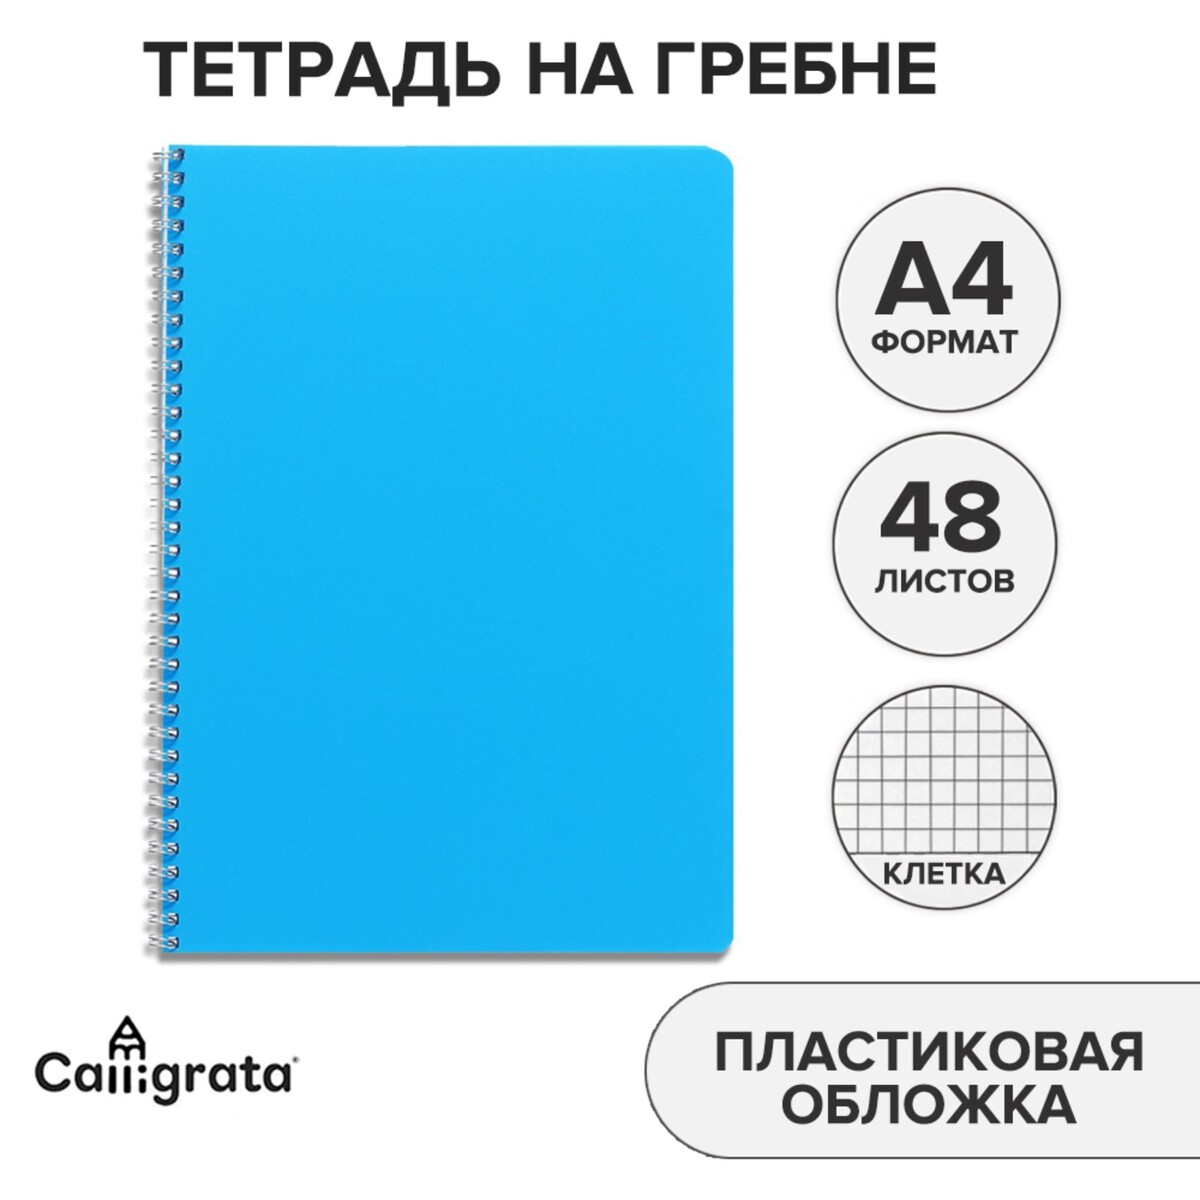 Тетрадь на гребне a4 48 листов в клетку calligrata голубая, пластиковая обложка, блок офсет